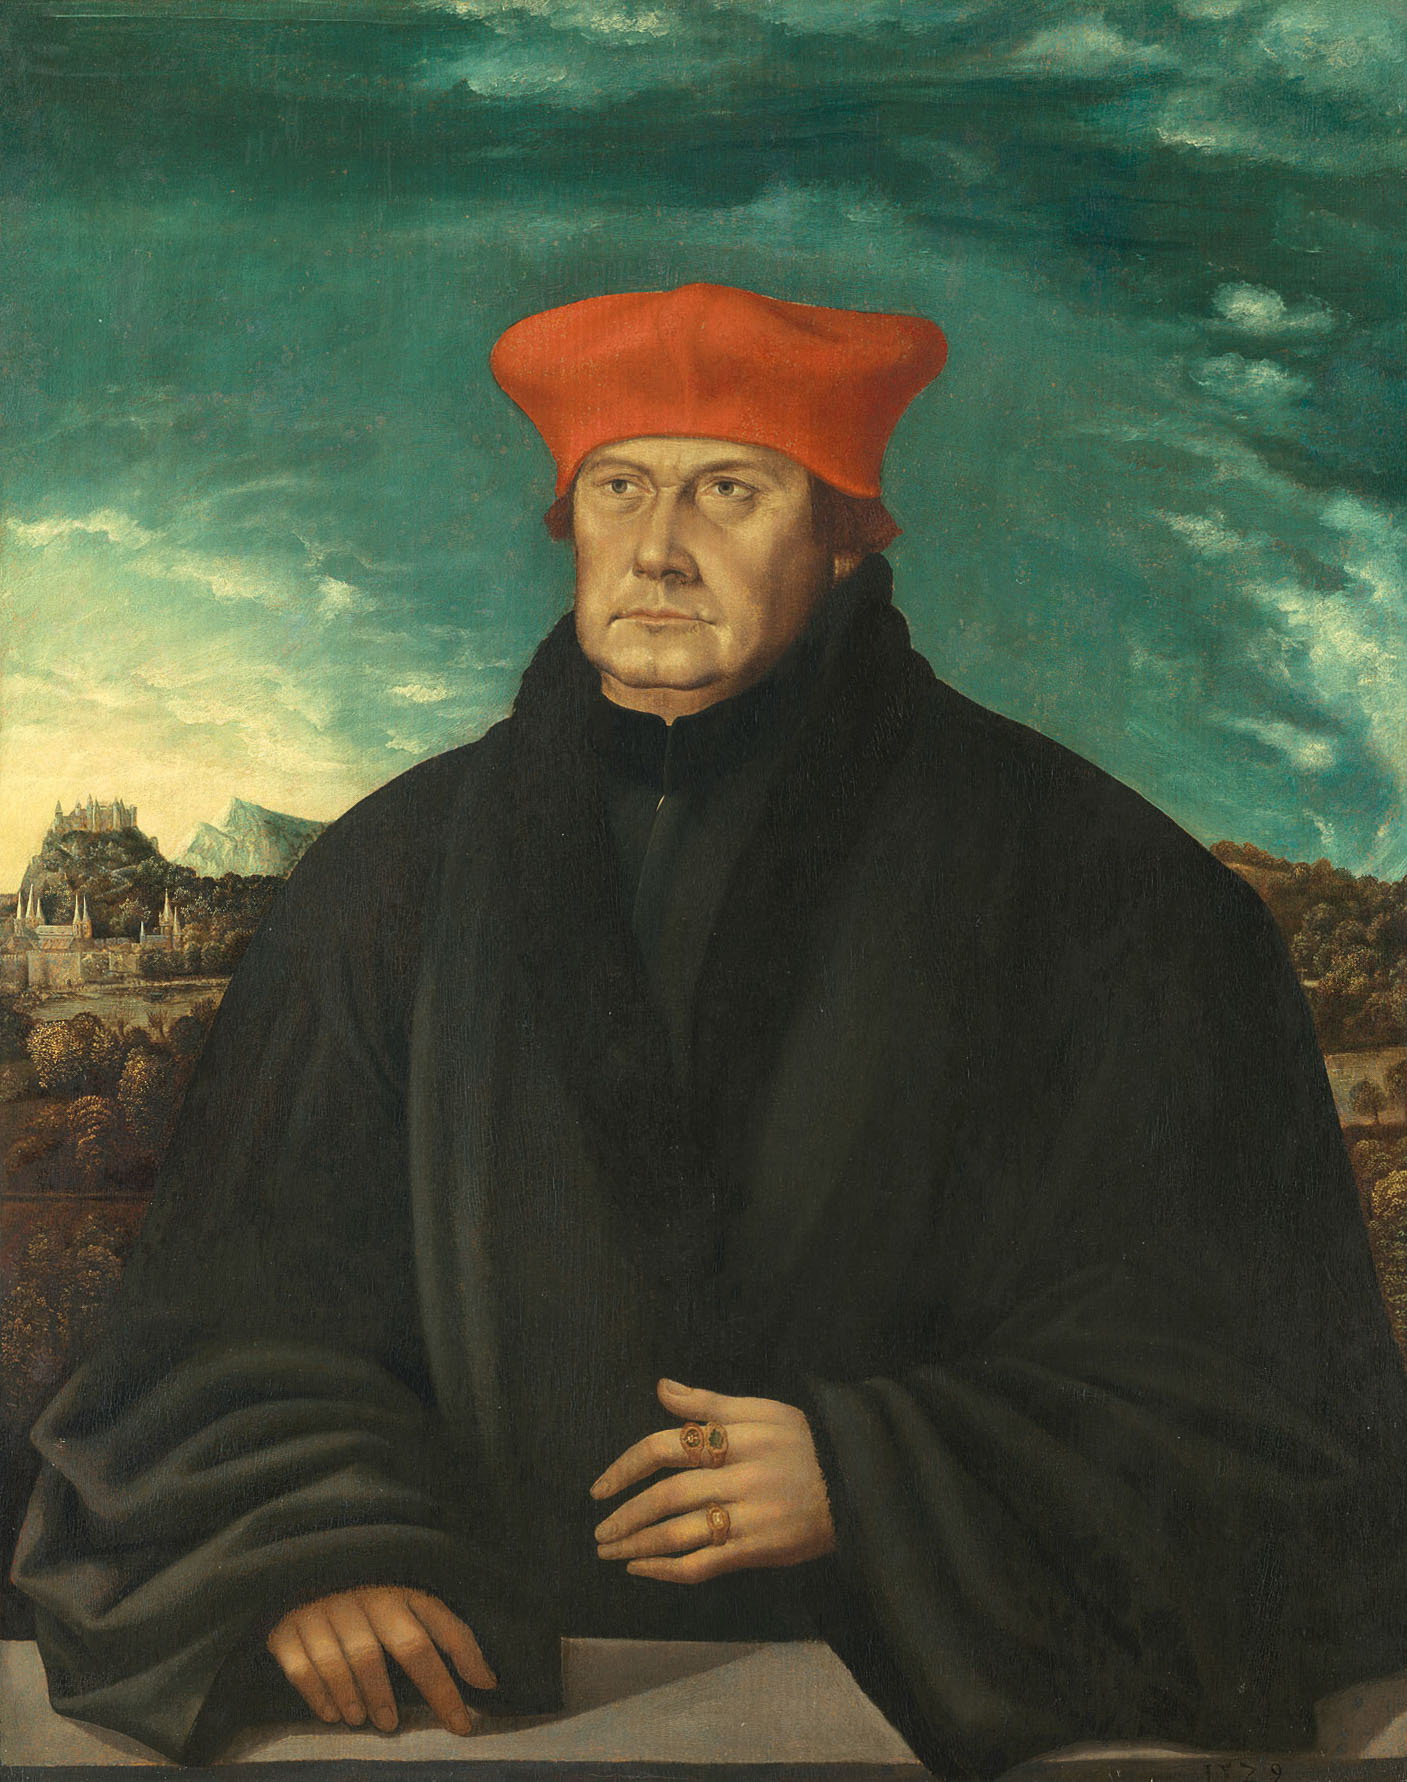 Kardinal Mathäus Lang von Wellenburg, Erzbischof von Salzburg von Salzburg